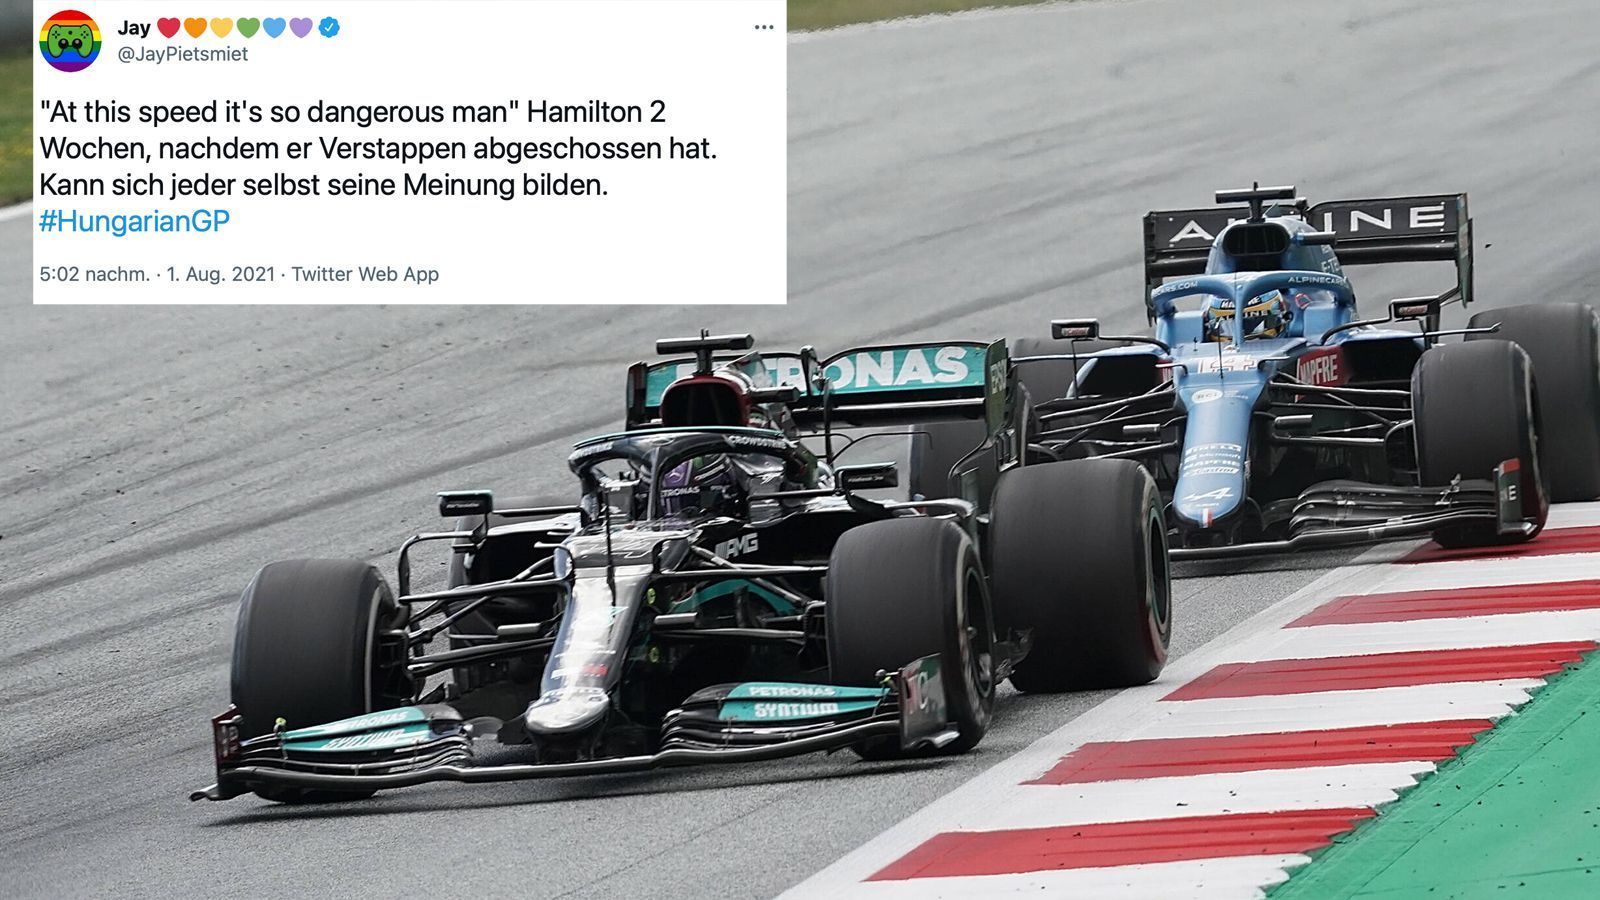 
                <strong>Kritik an Hamilton</strong><br>
                Dass sich Hamilton im Laufe des Duells über Alonsos Stil beschwerte, entbehrt nicht einer gewissen Ironie.
              